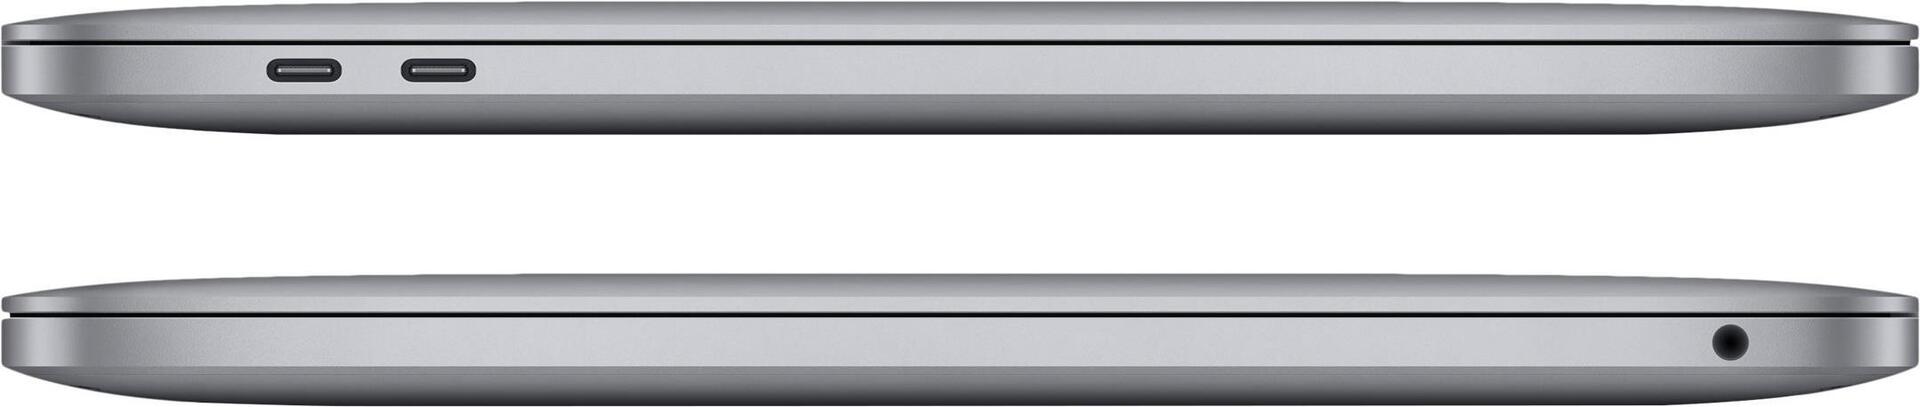 Apple MacBook Pro 13‘‘ M2 SpaceGrau CTO 8C-CPU 10C-GPU (1TB) (Z16R-0020000)